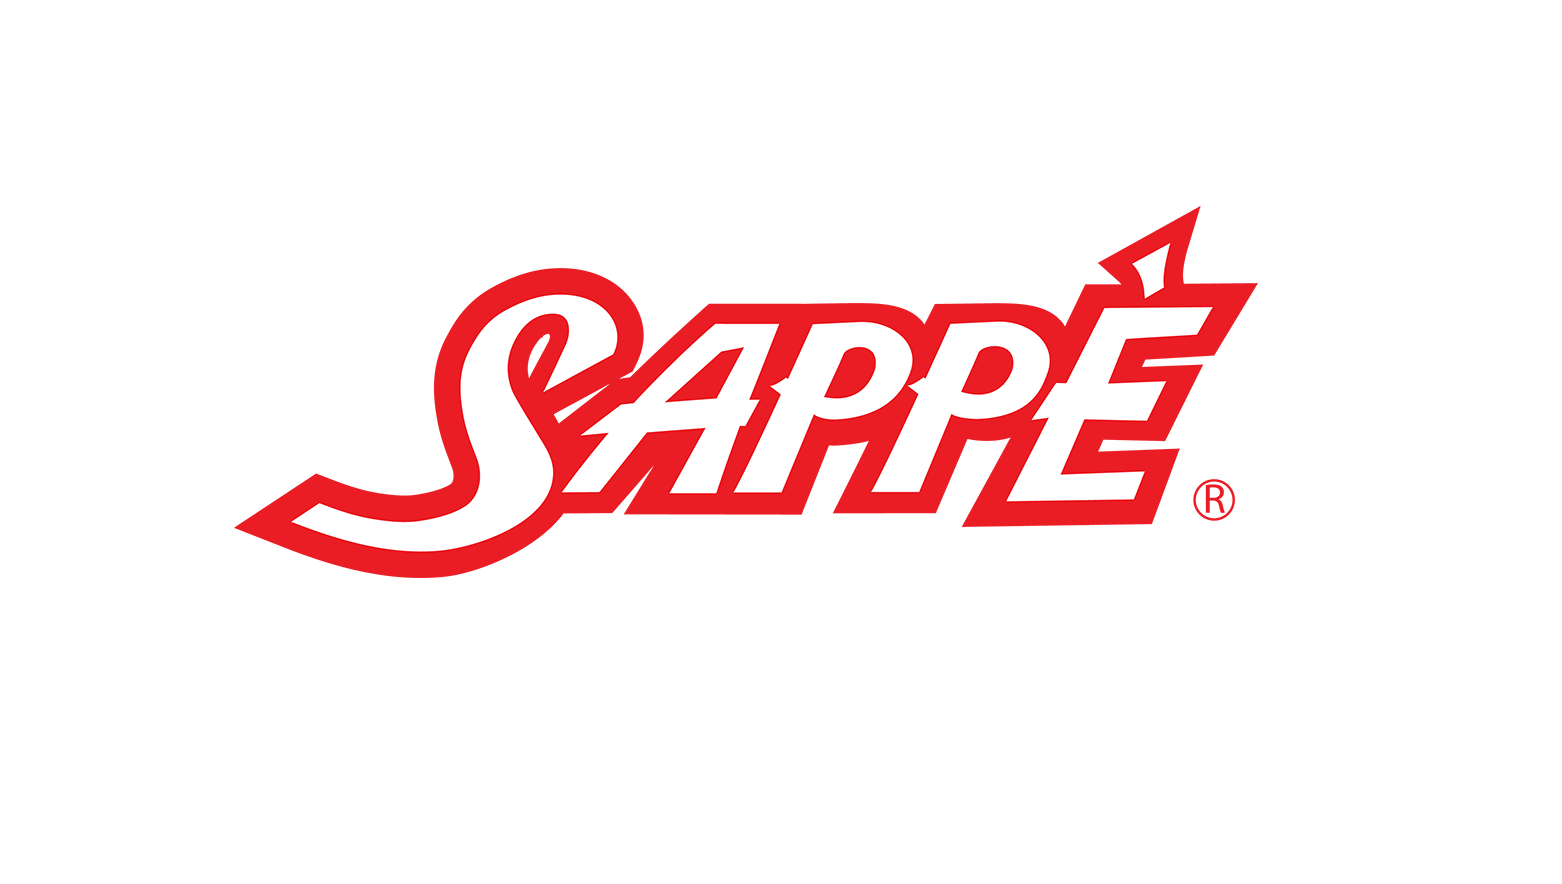 SAPPE เผยยอดจำหน่ายปี 2565 สูงสุดเป็นประวัติการณ์ เดินหน้าทำตลาดผ่าน Influencer